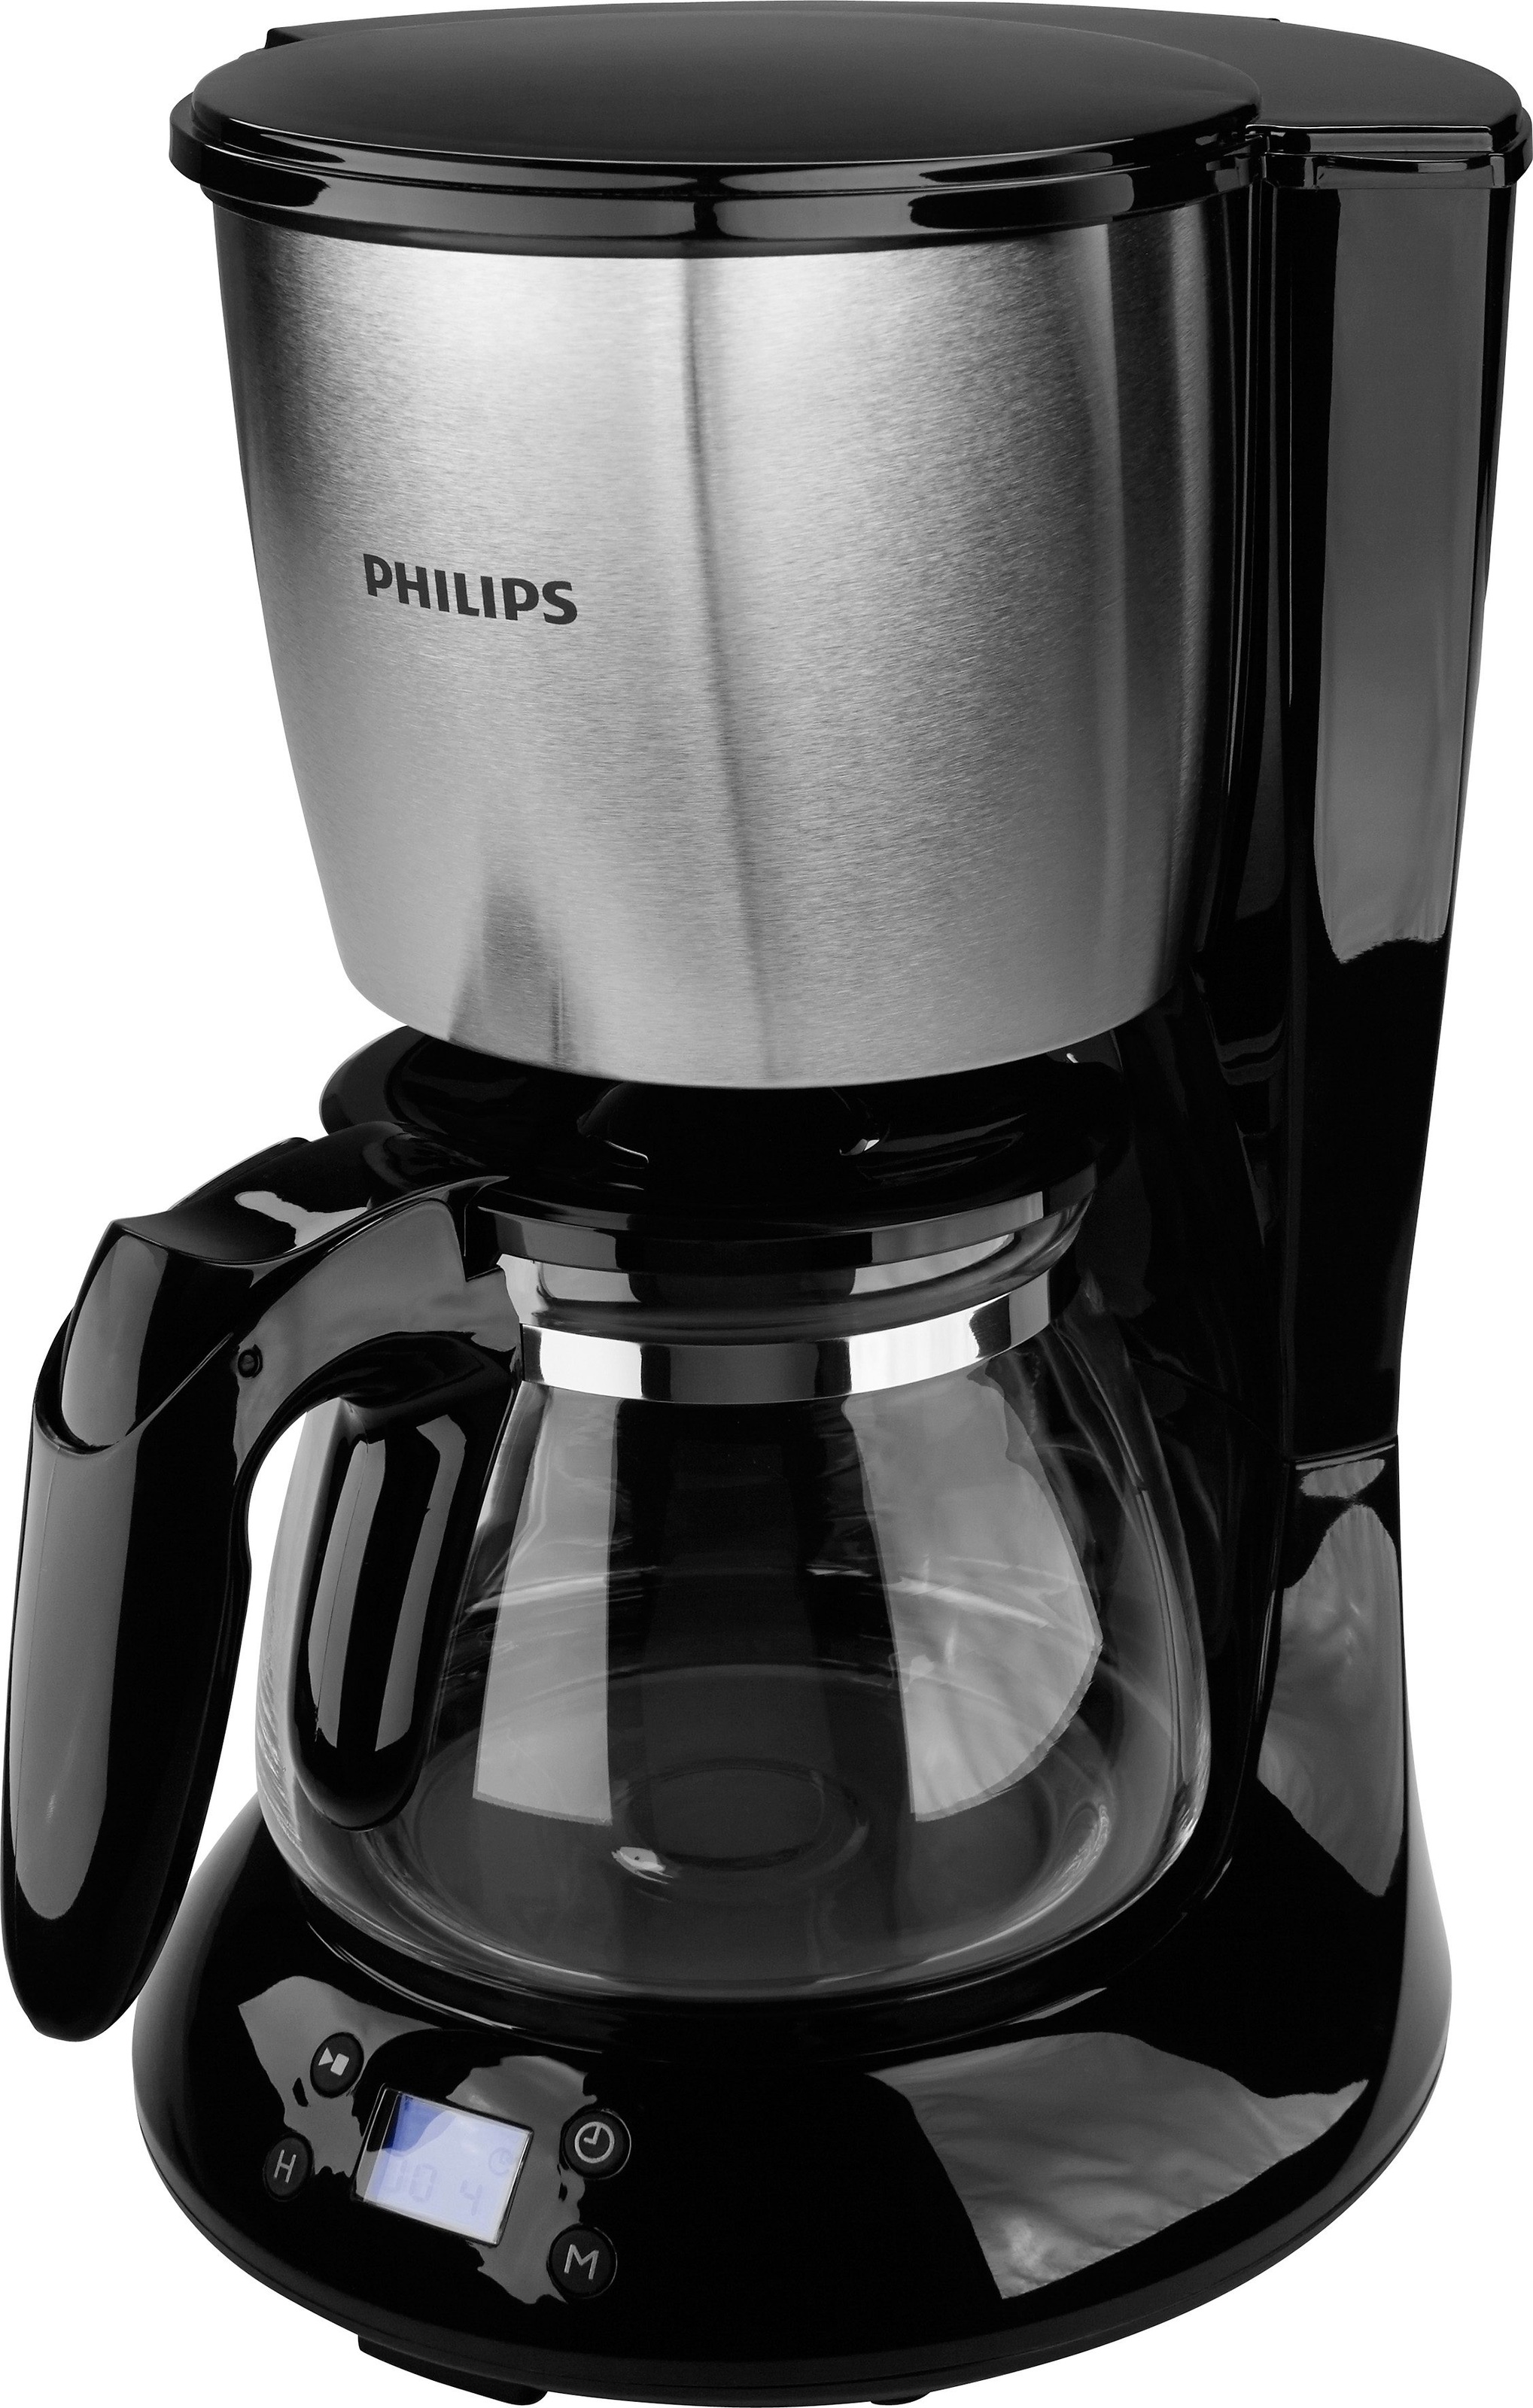 Philips Filterkaffeemaschine »HD7459/20 Daily Collection«, Kaffeekanne 1,2 kaufen bei jetzt l OTTO